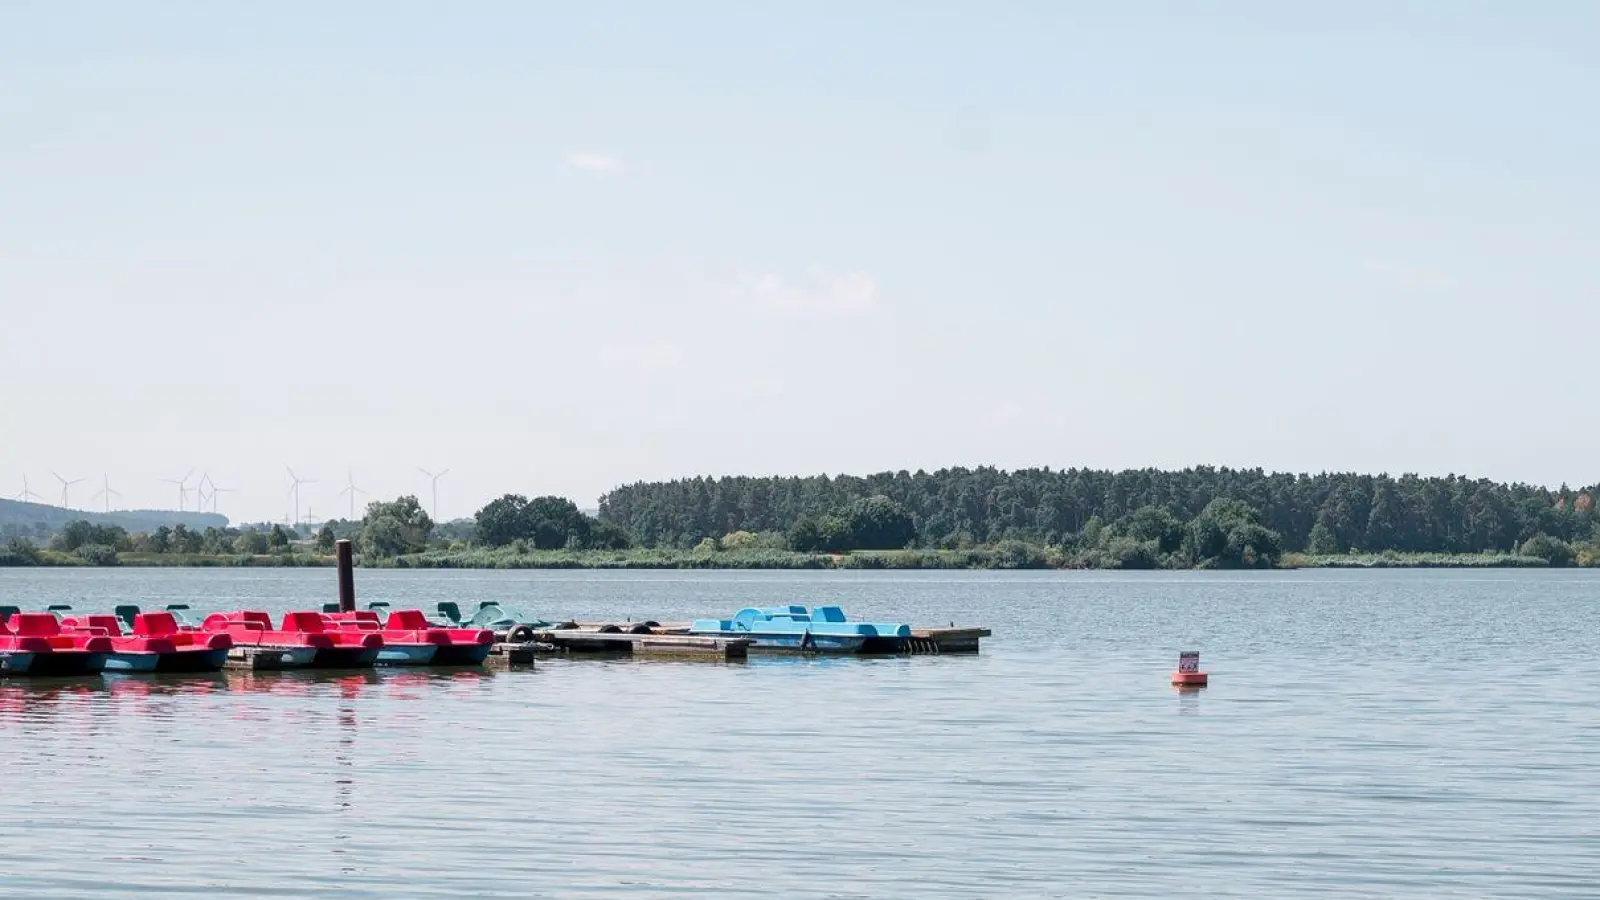 Für den Altmühlsee ist ein Badeverbot ausgesprochen worden, da dort eine starke Blaualgenentwicklung vorliegt. (Foto: Daniel Vogl/dpa/Archiv)